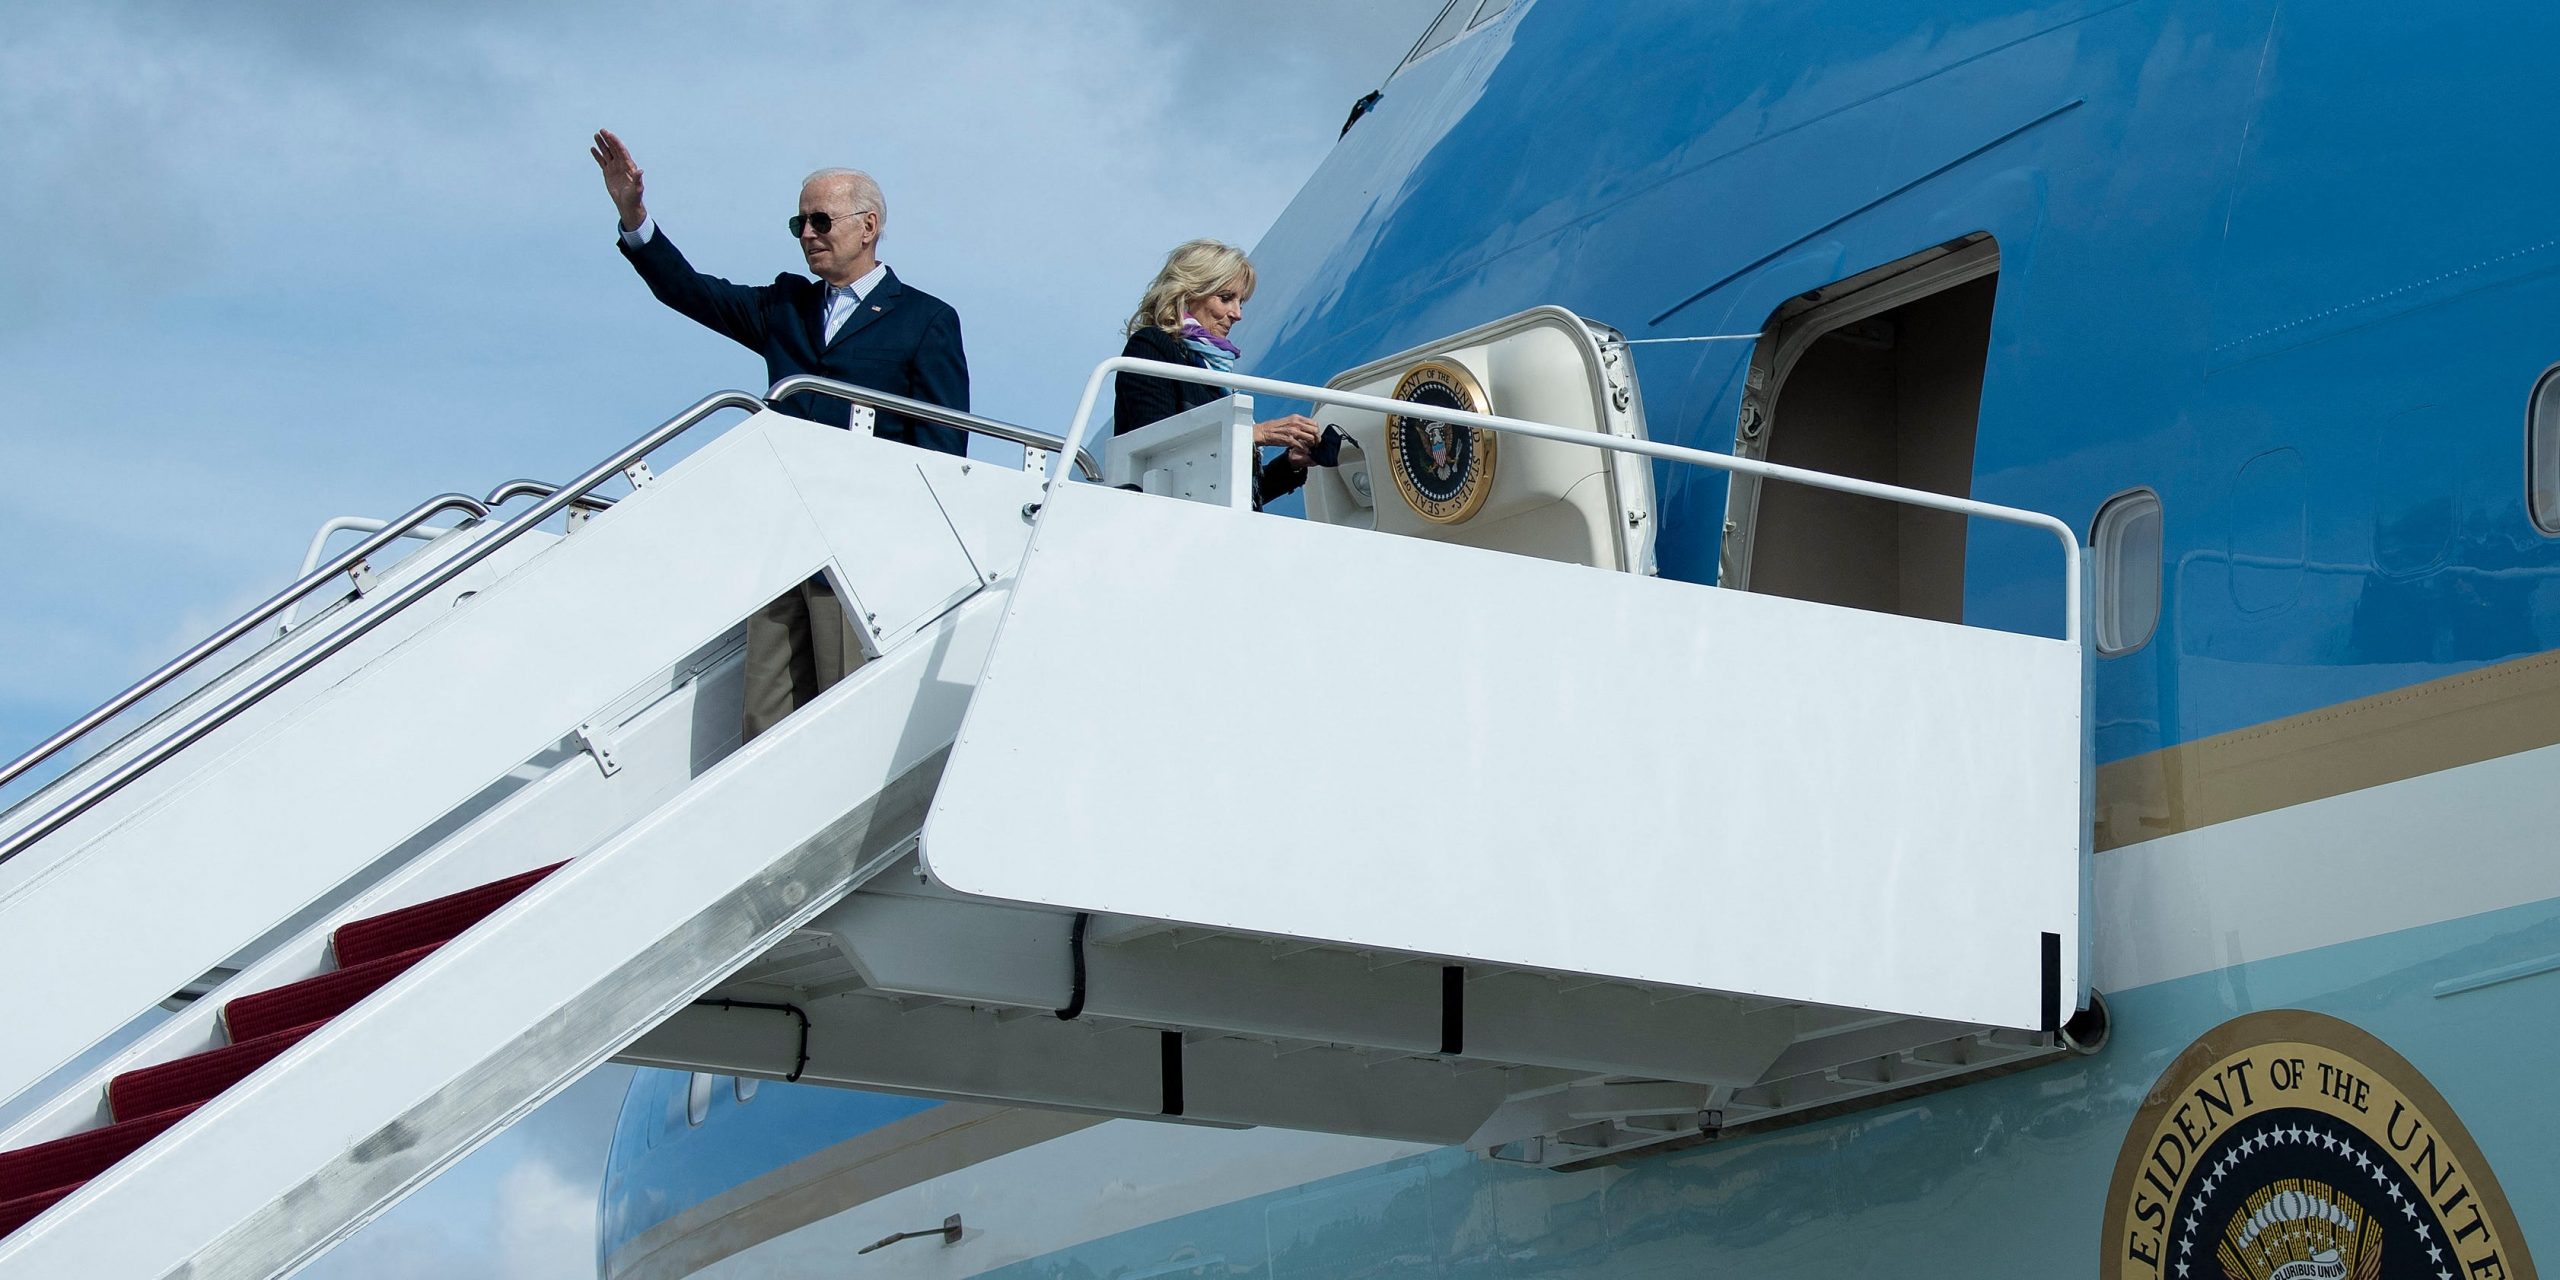 President Joe Biden boards Air Force One